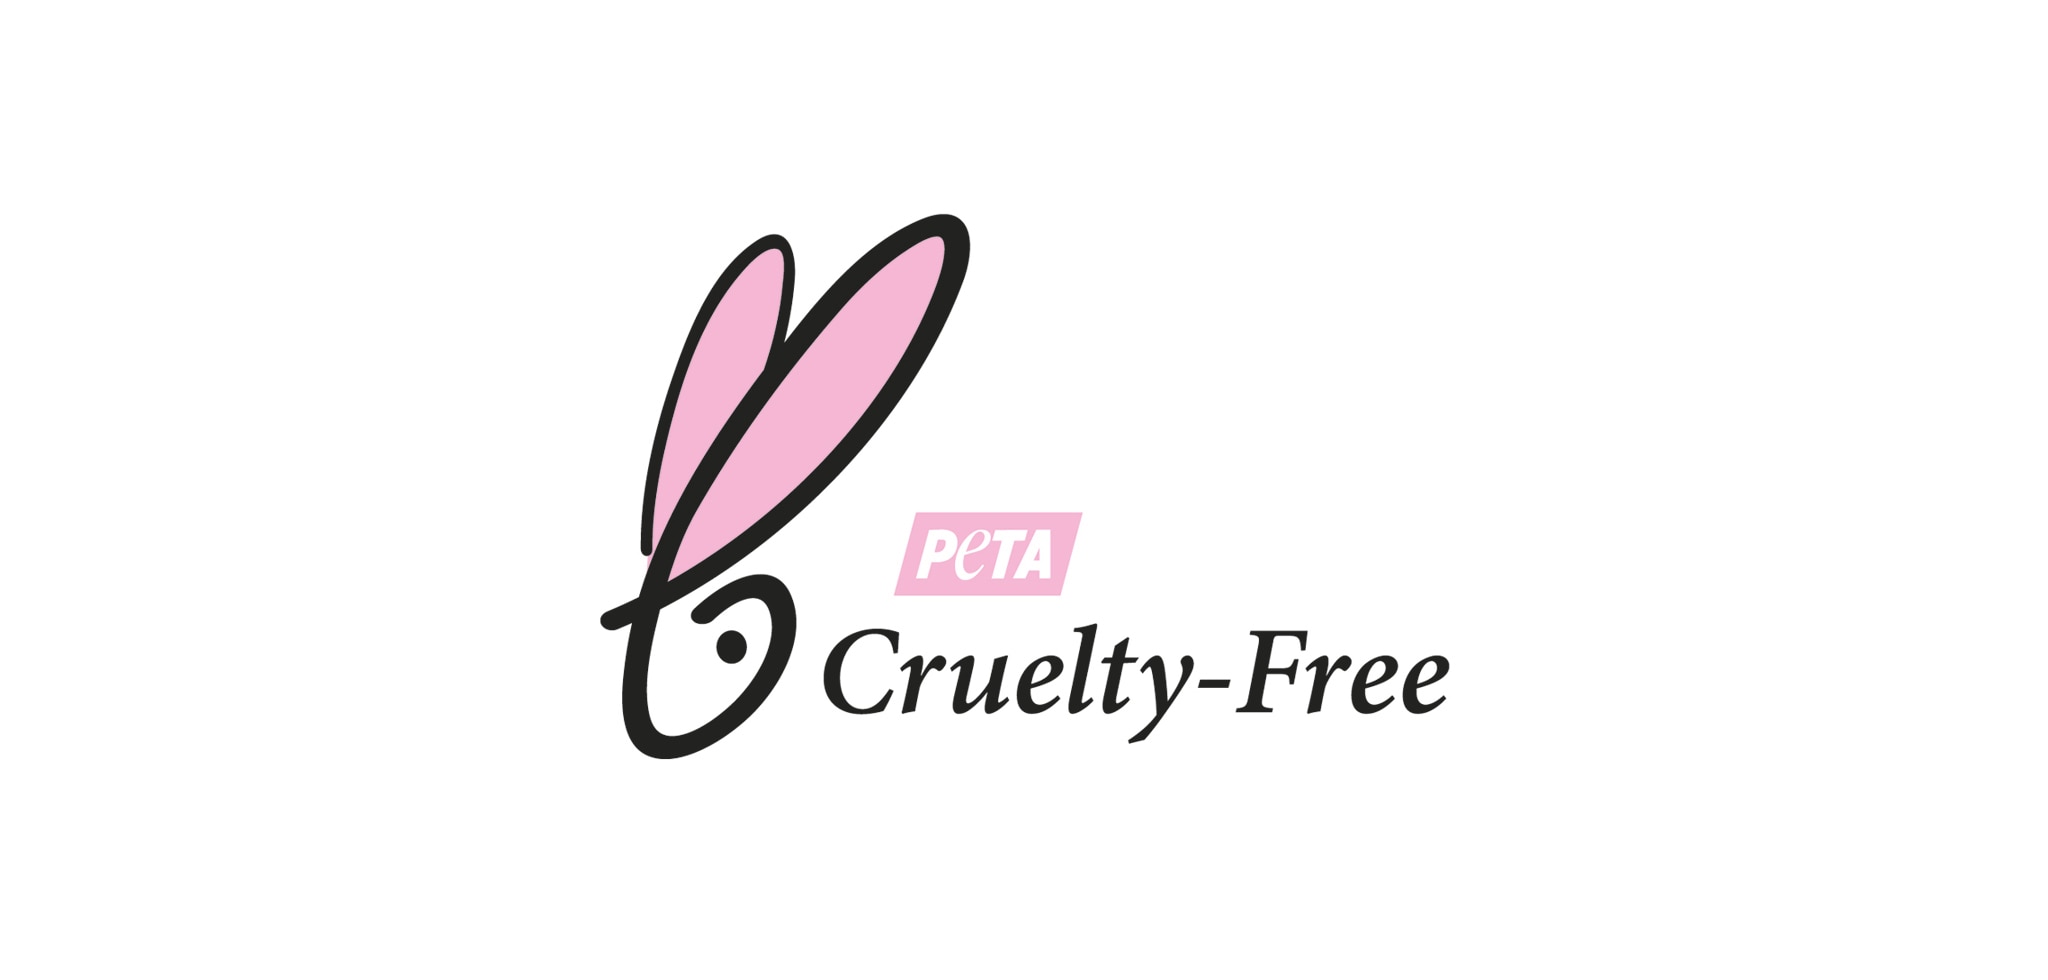 La vraie beauté est certifiée sans cruauté par PETA 